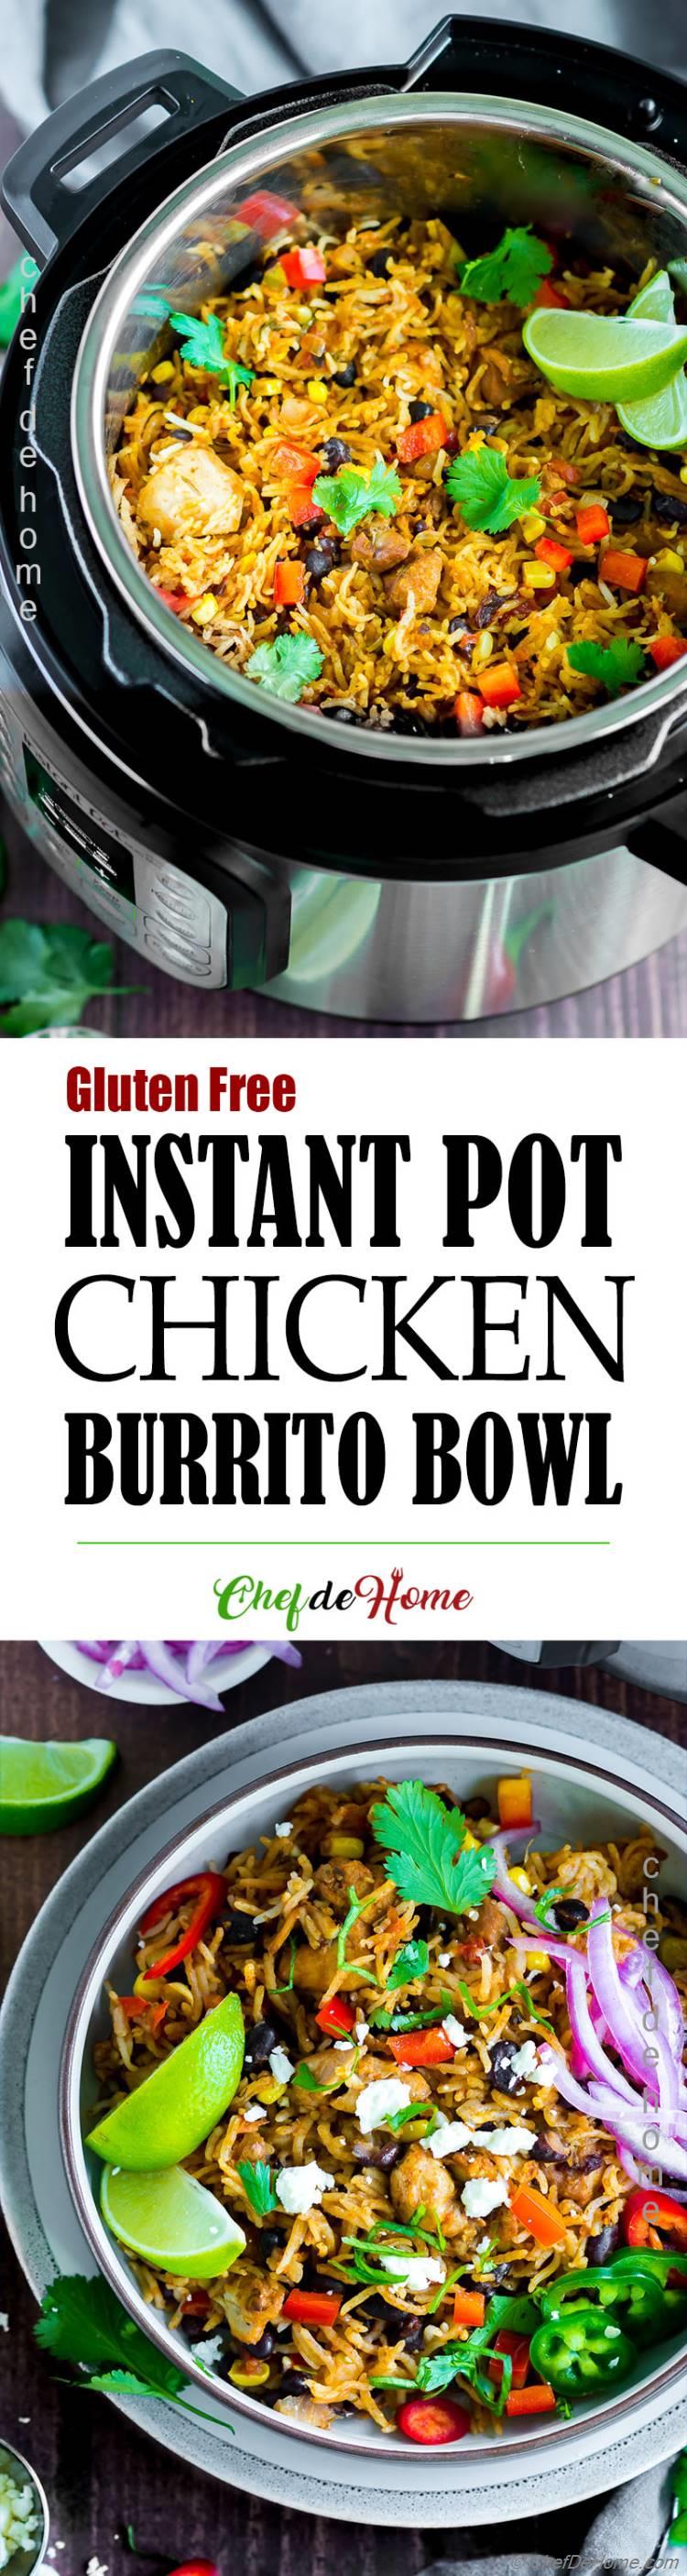 Chipotle Chicken Burrito Bowl in Instant Pot